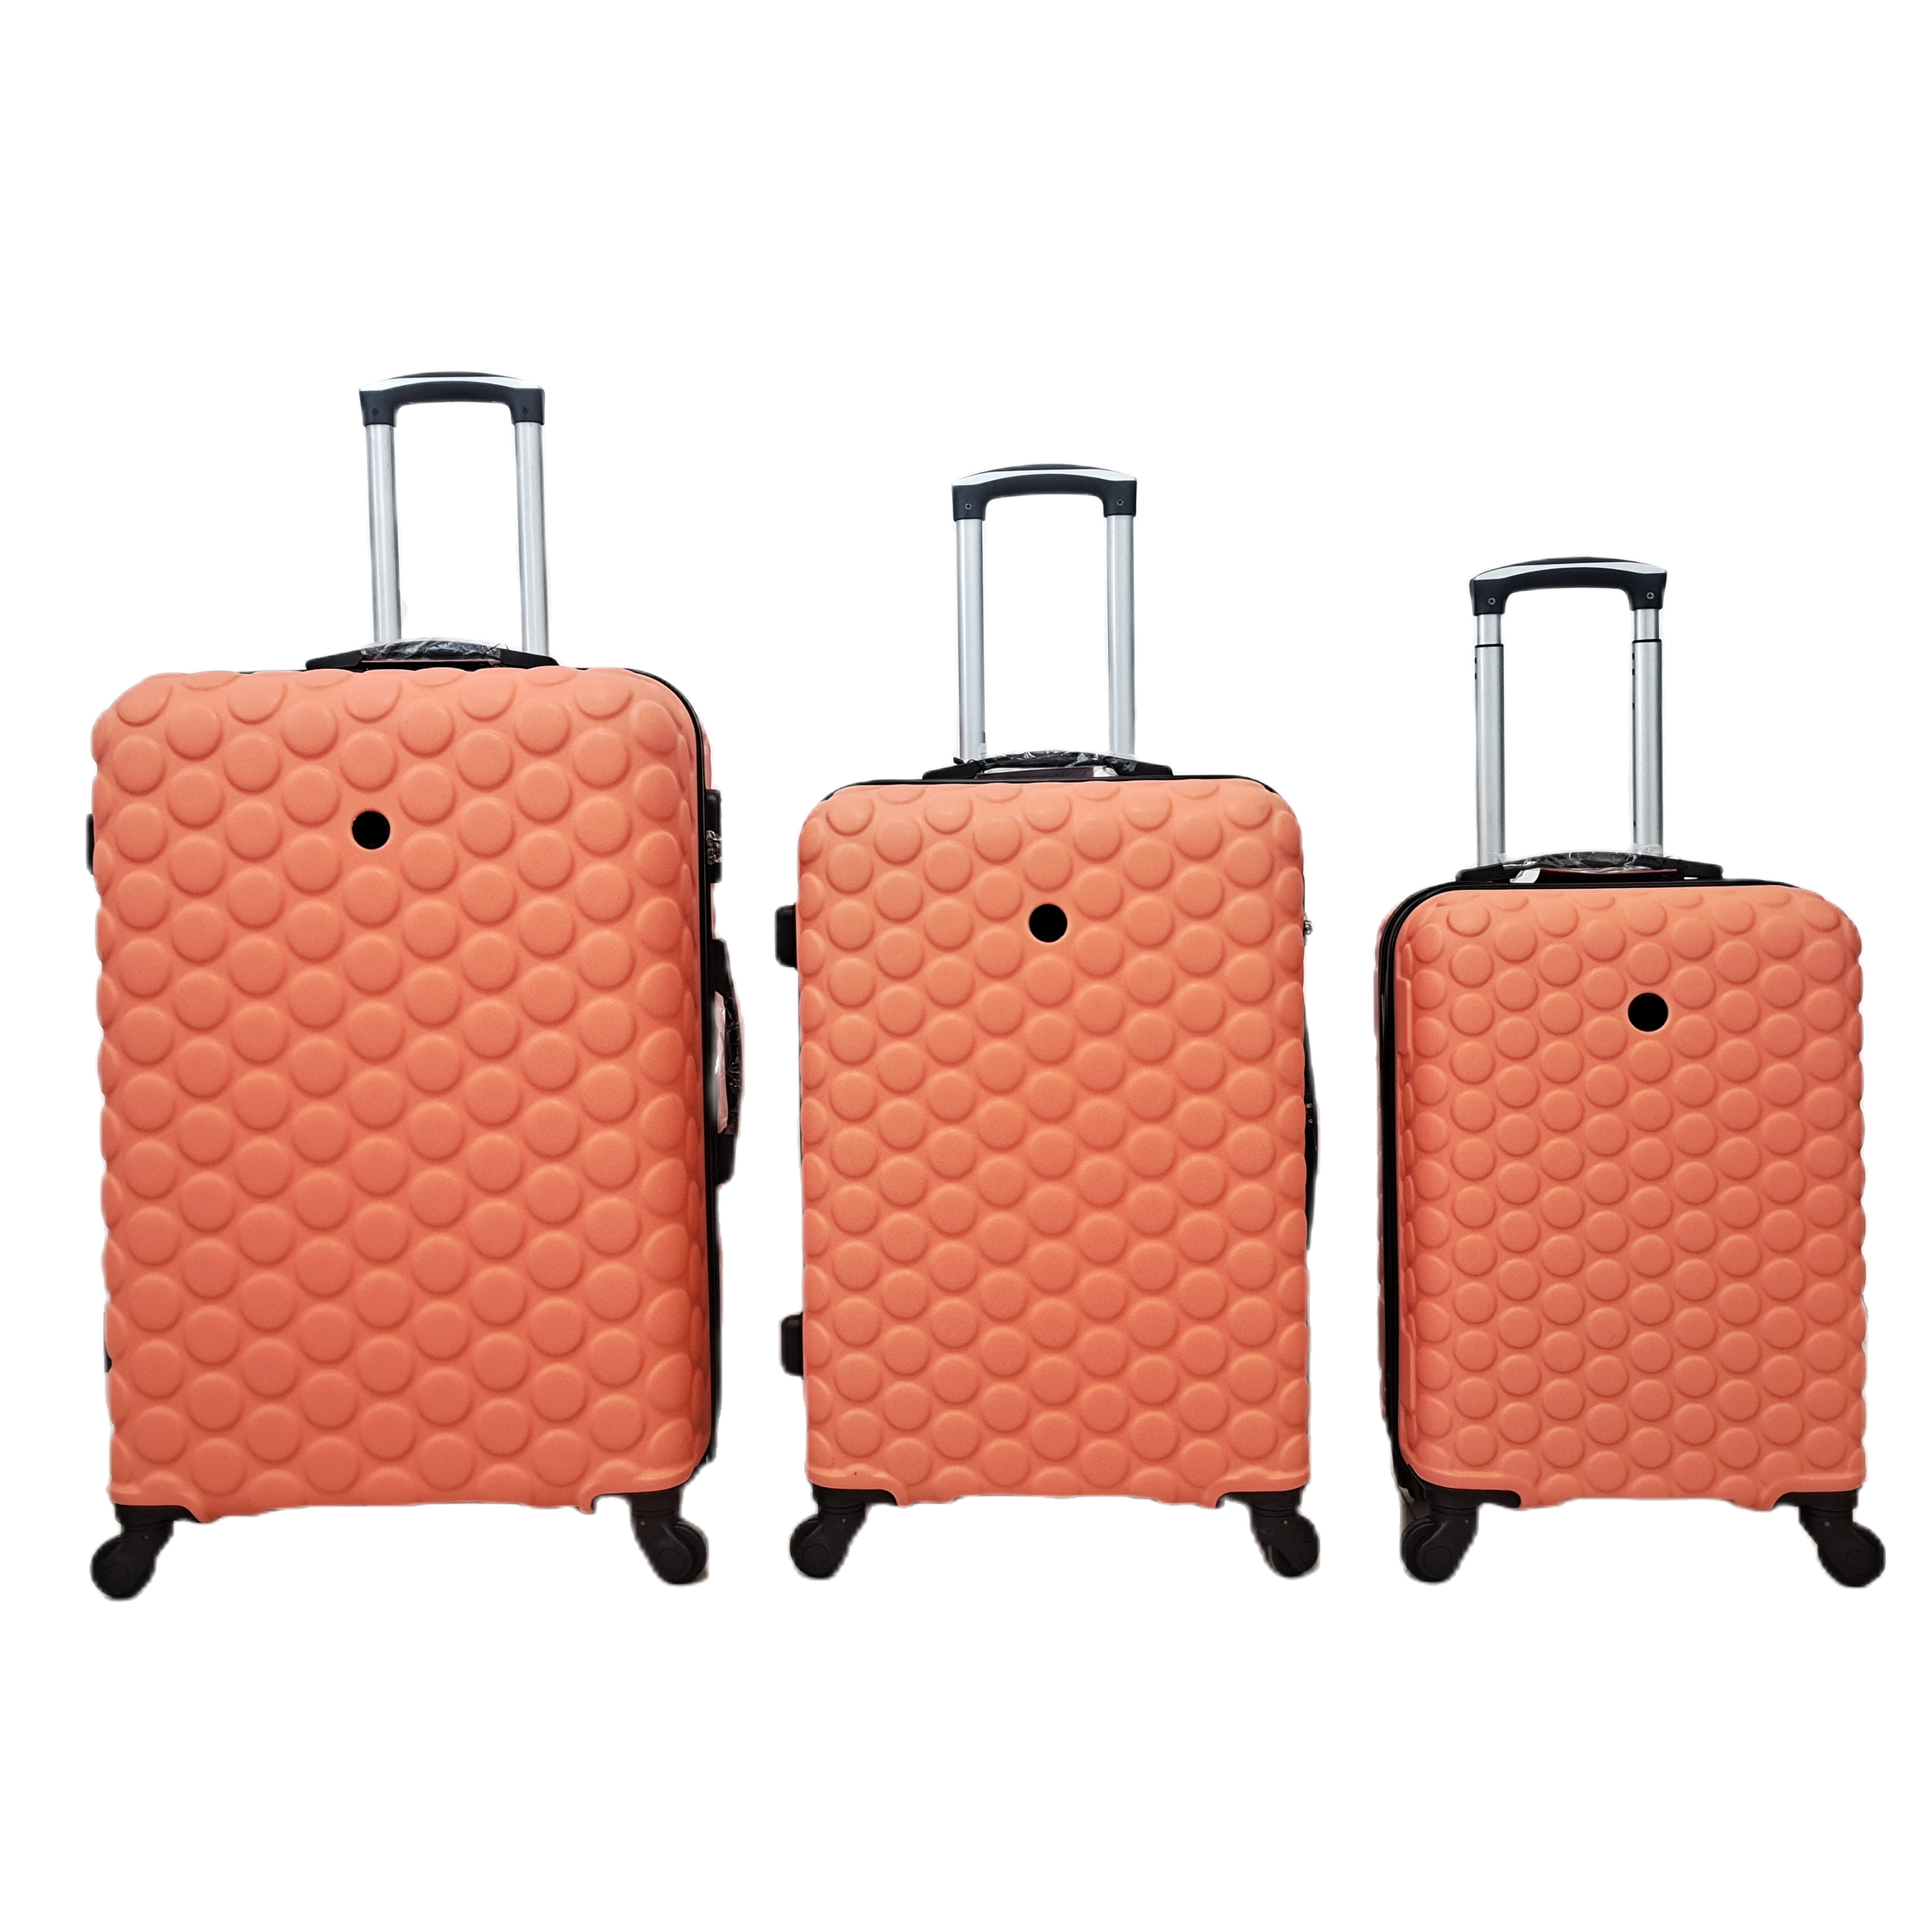 Дорожный чемодан из АБС-пластика Smart Suit Case на колесиках для самолетов